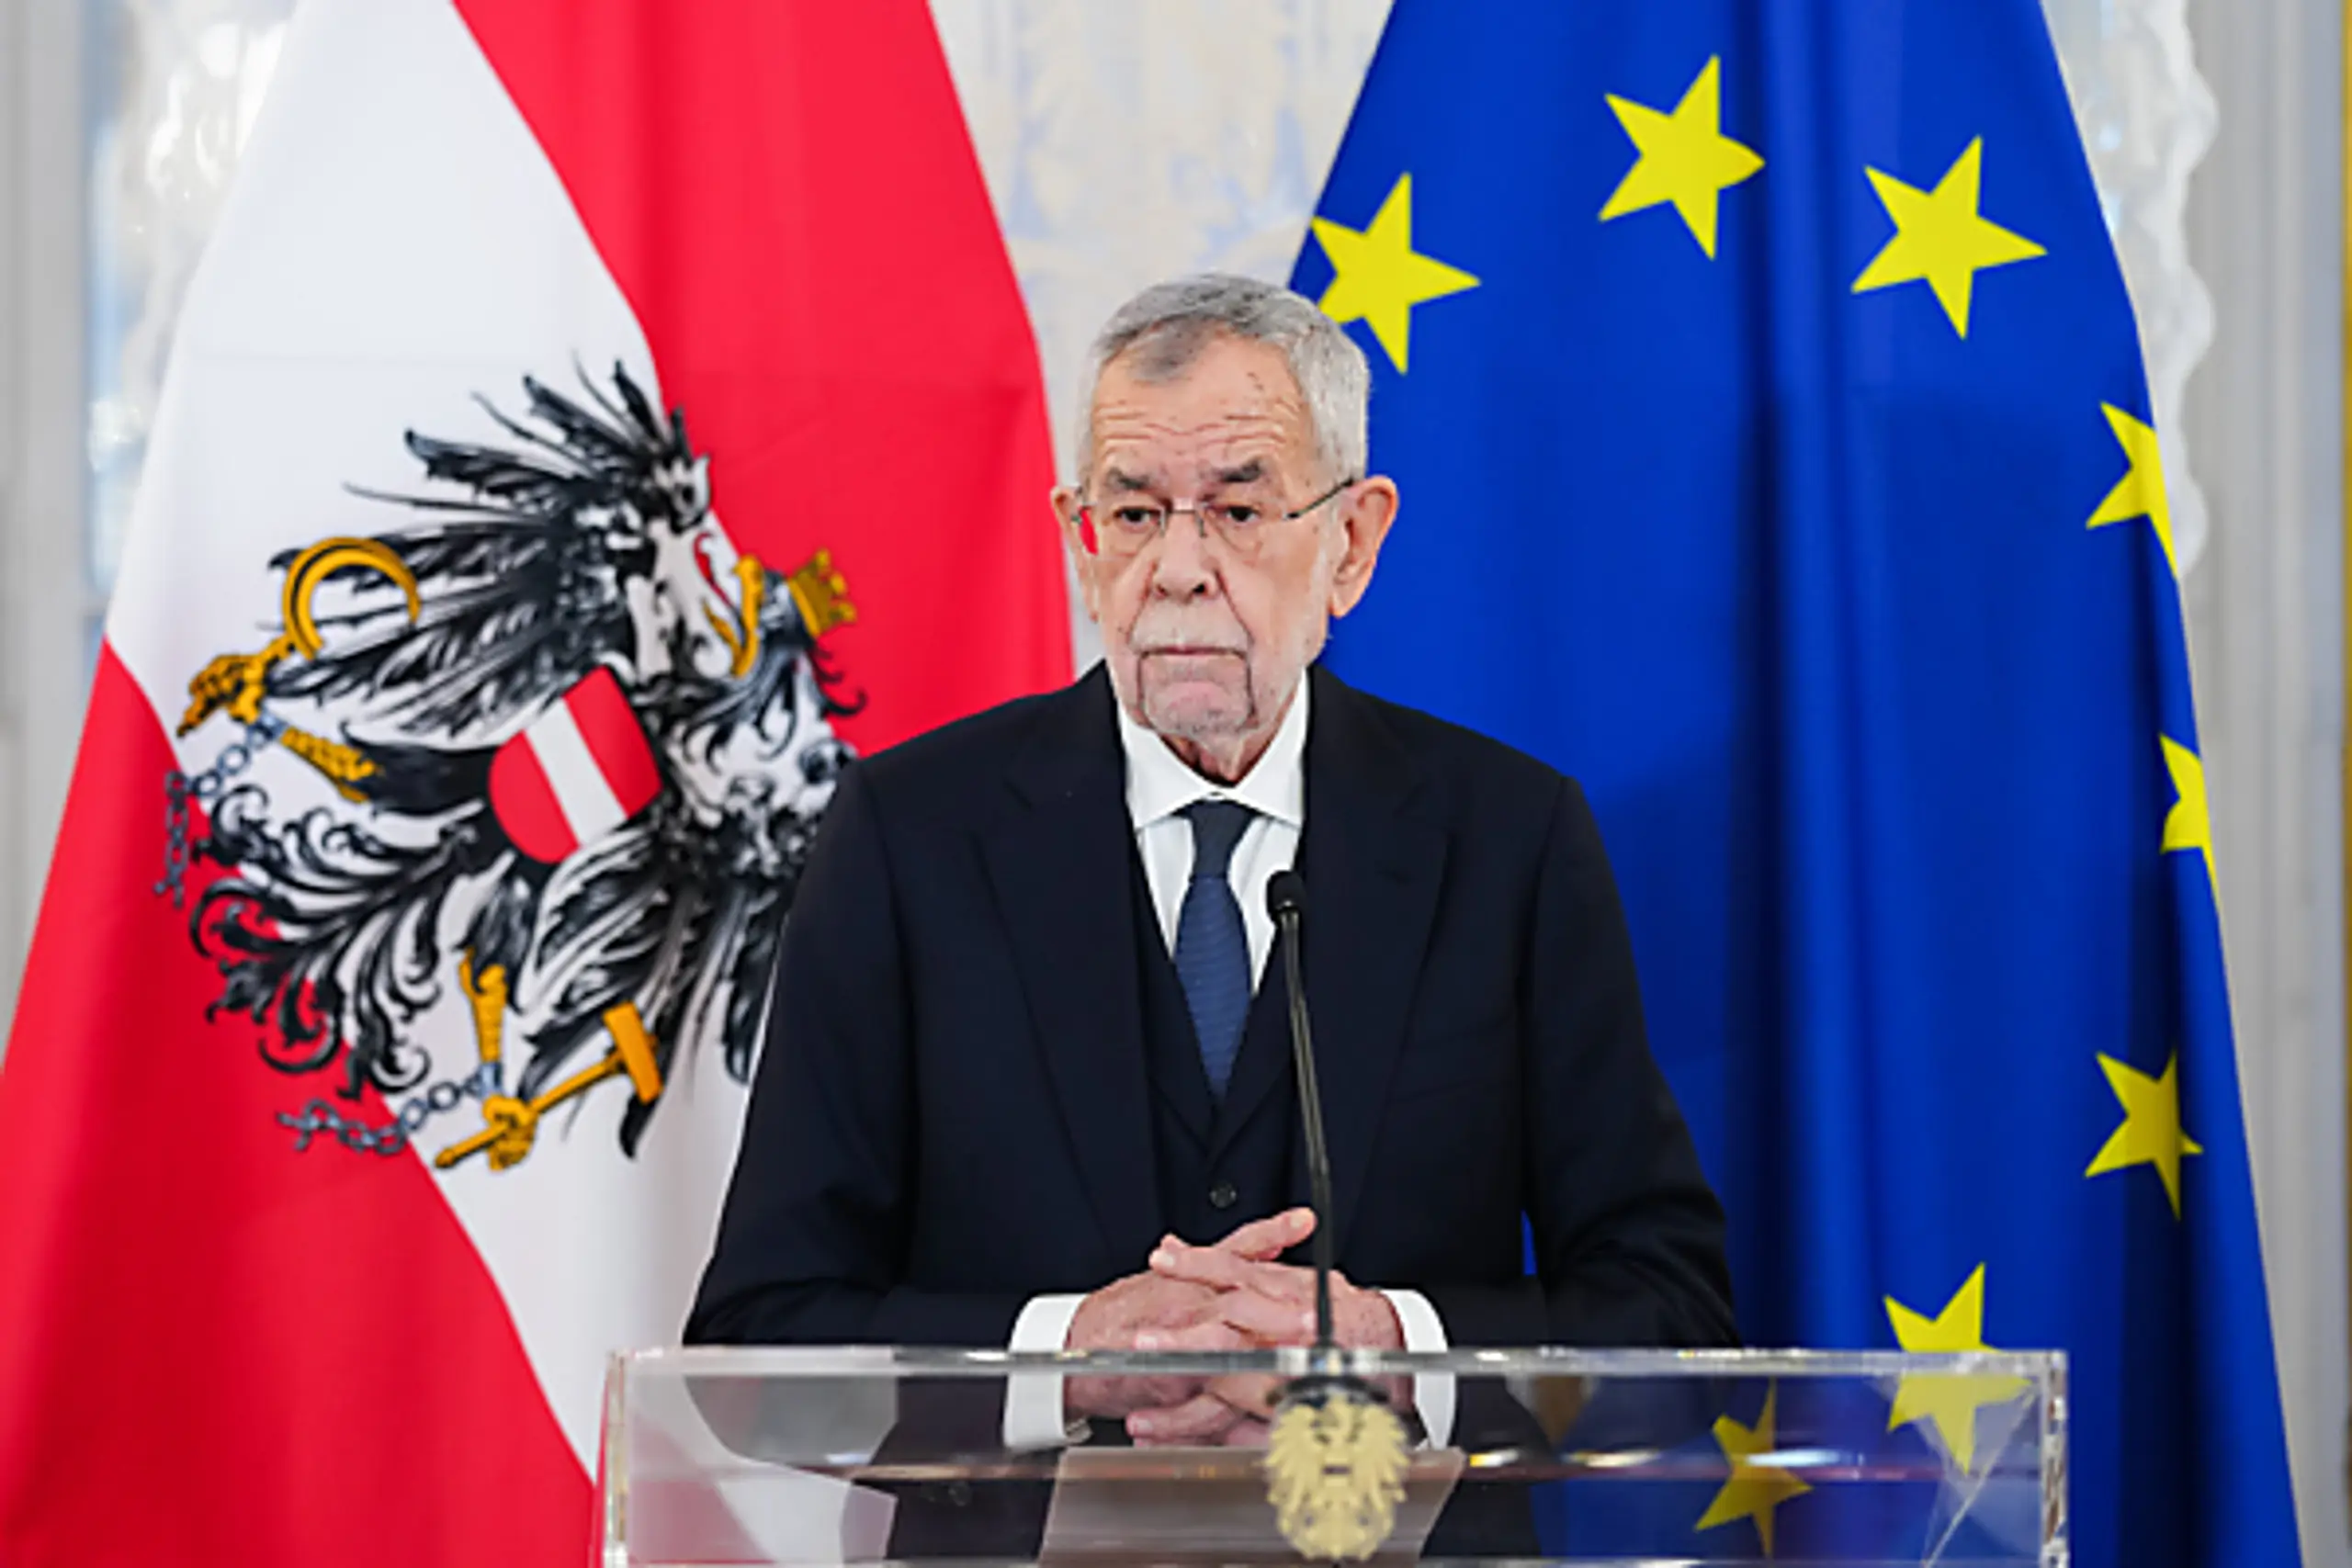 Um Österreich zu schützen müsse Europa stark sein, so Van der Bellen